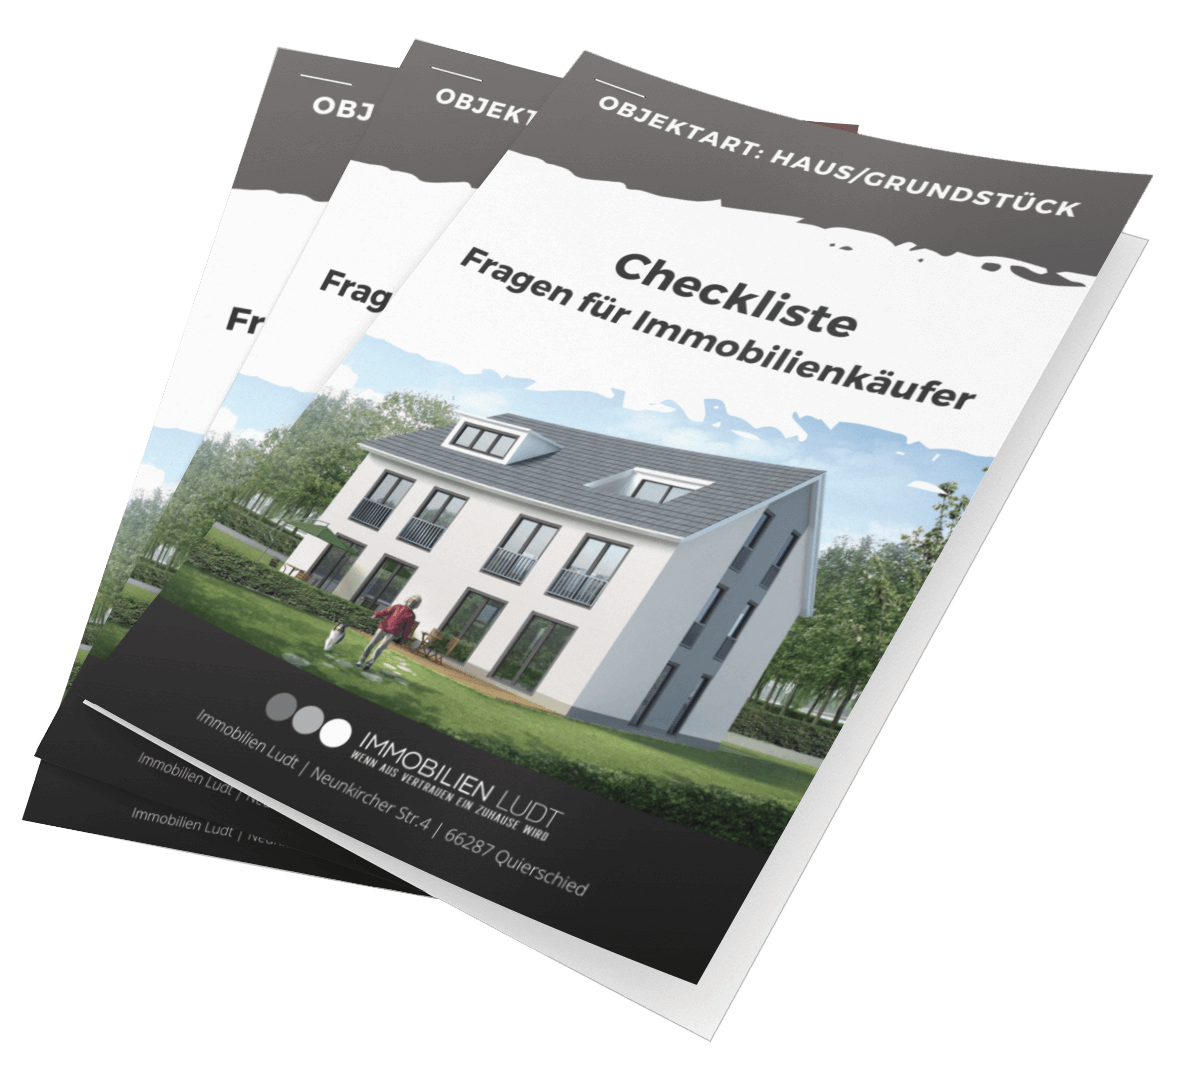 Checkliste-Haus-Grundstuck-Magazin.png